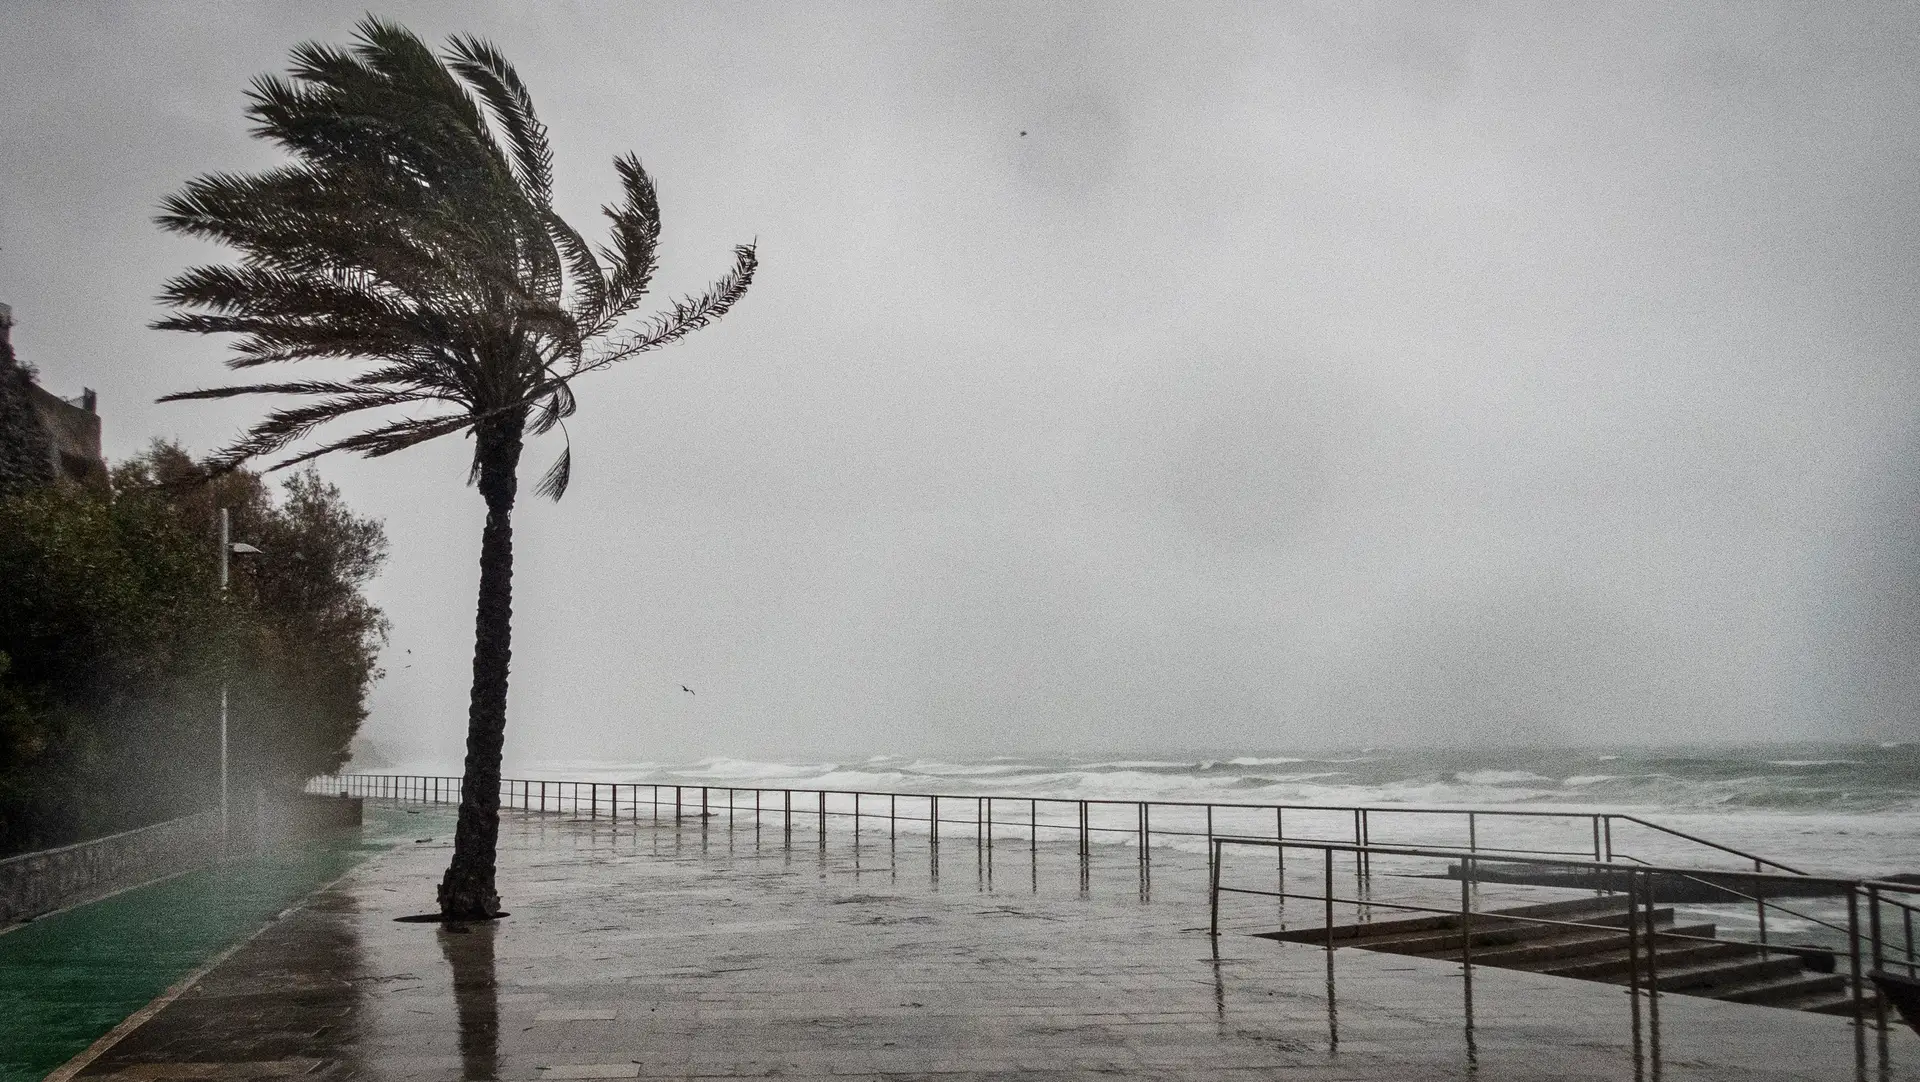 IPMA confirma fenómeno meteorológico que "parece ter sido um tornado" na região sul de Lisboa